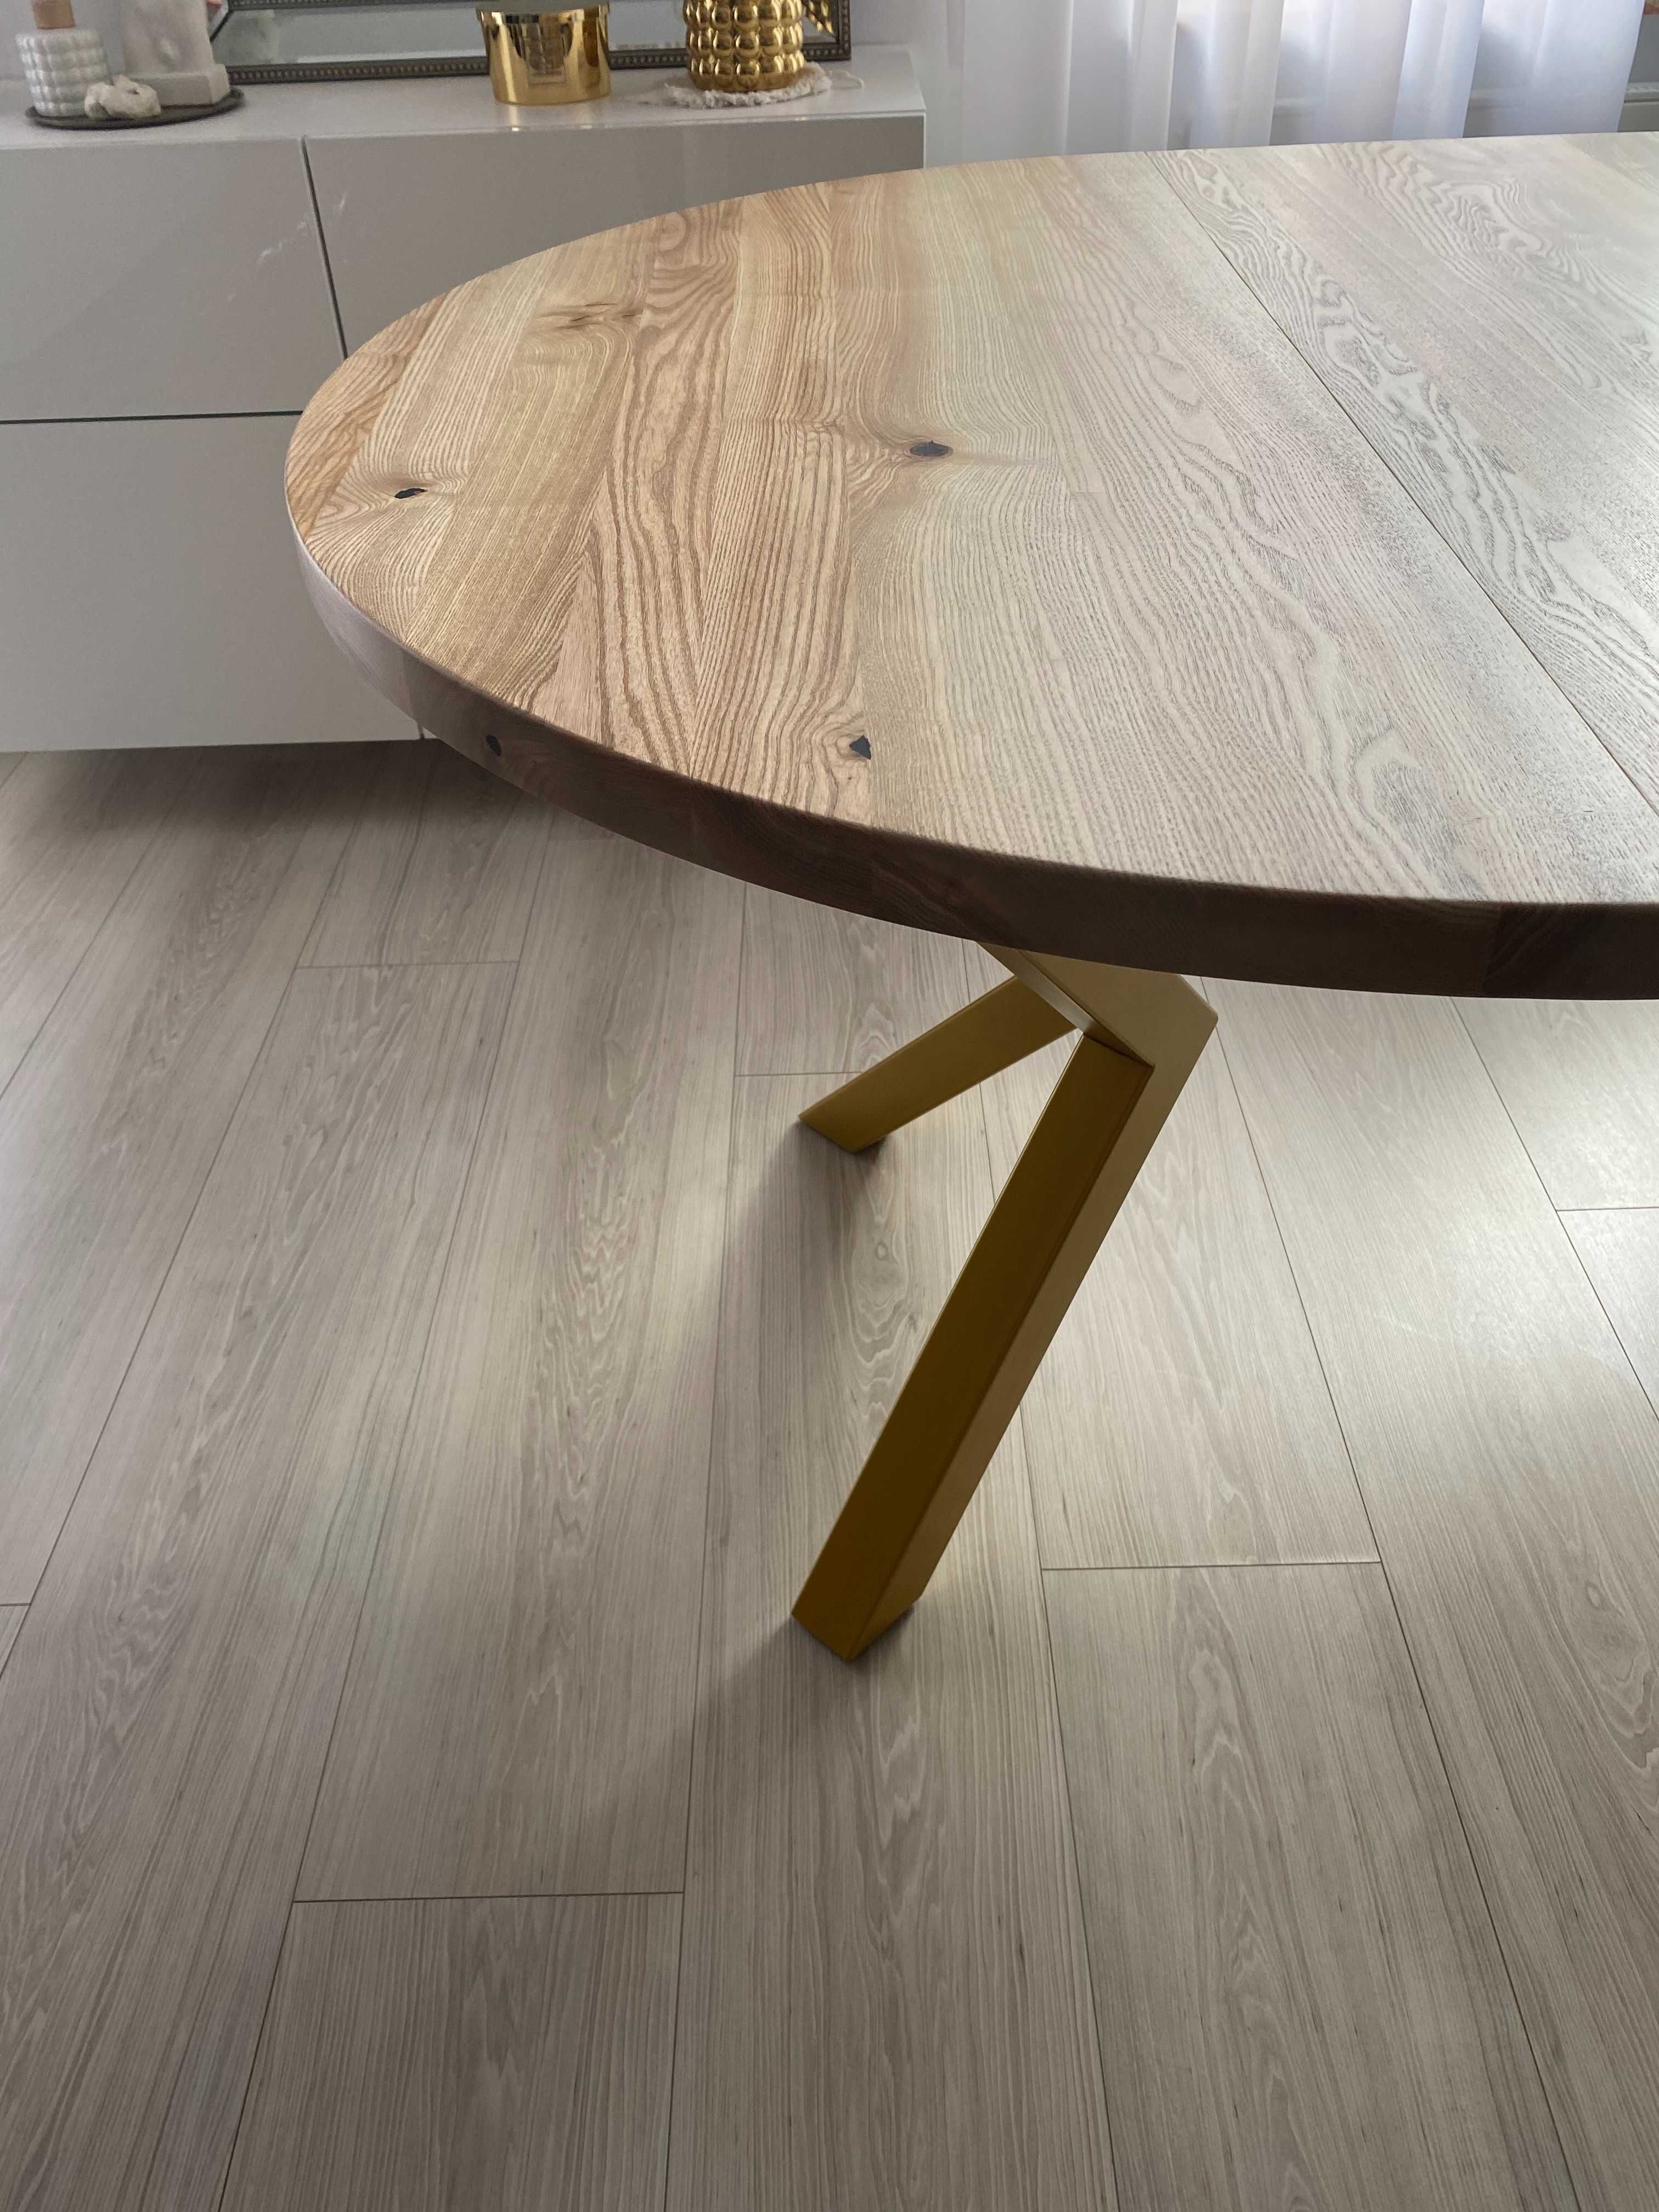 Stół okrągły rozkładany- stół drewniany -złote nogi- glamour - loft